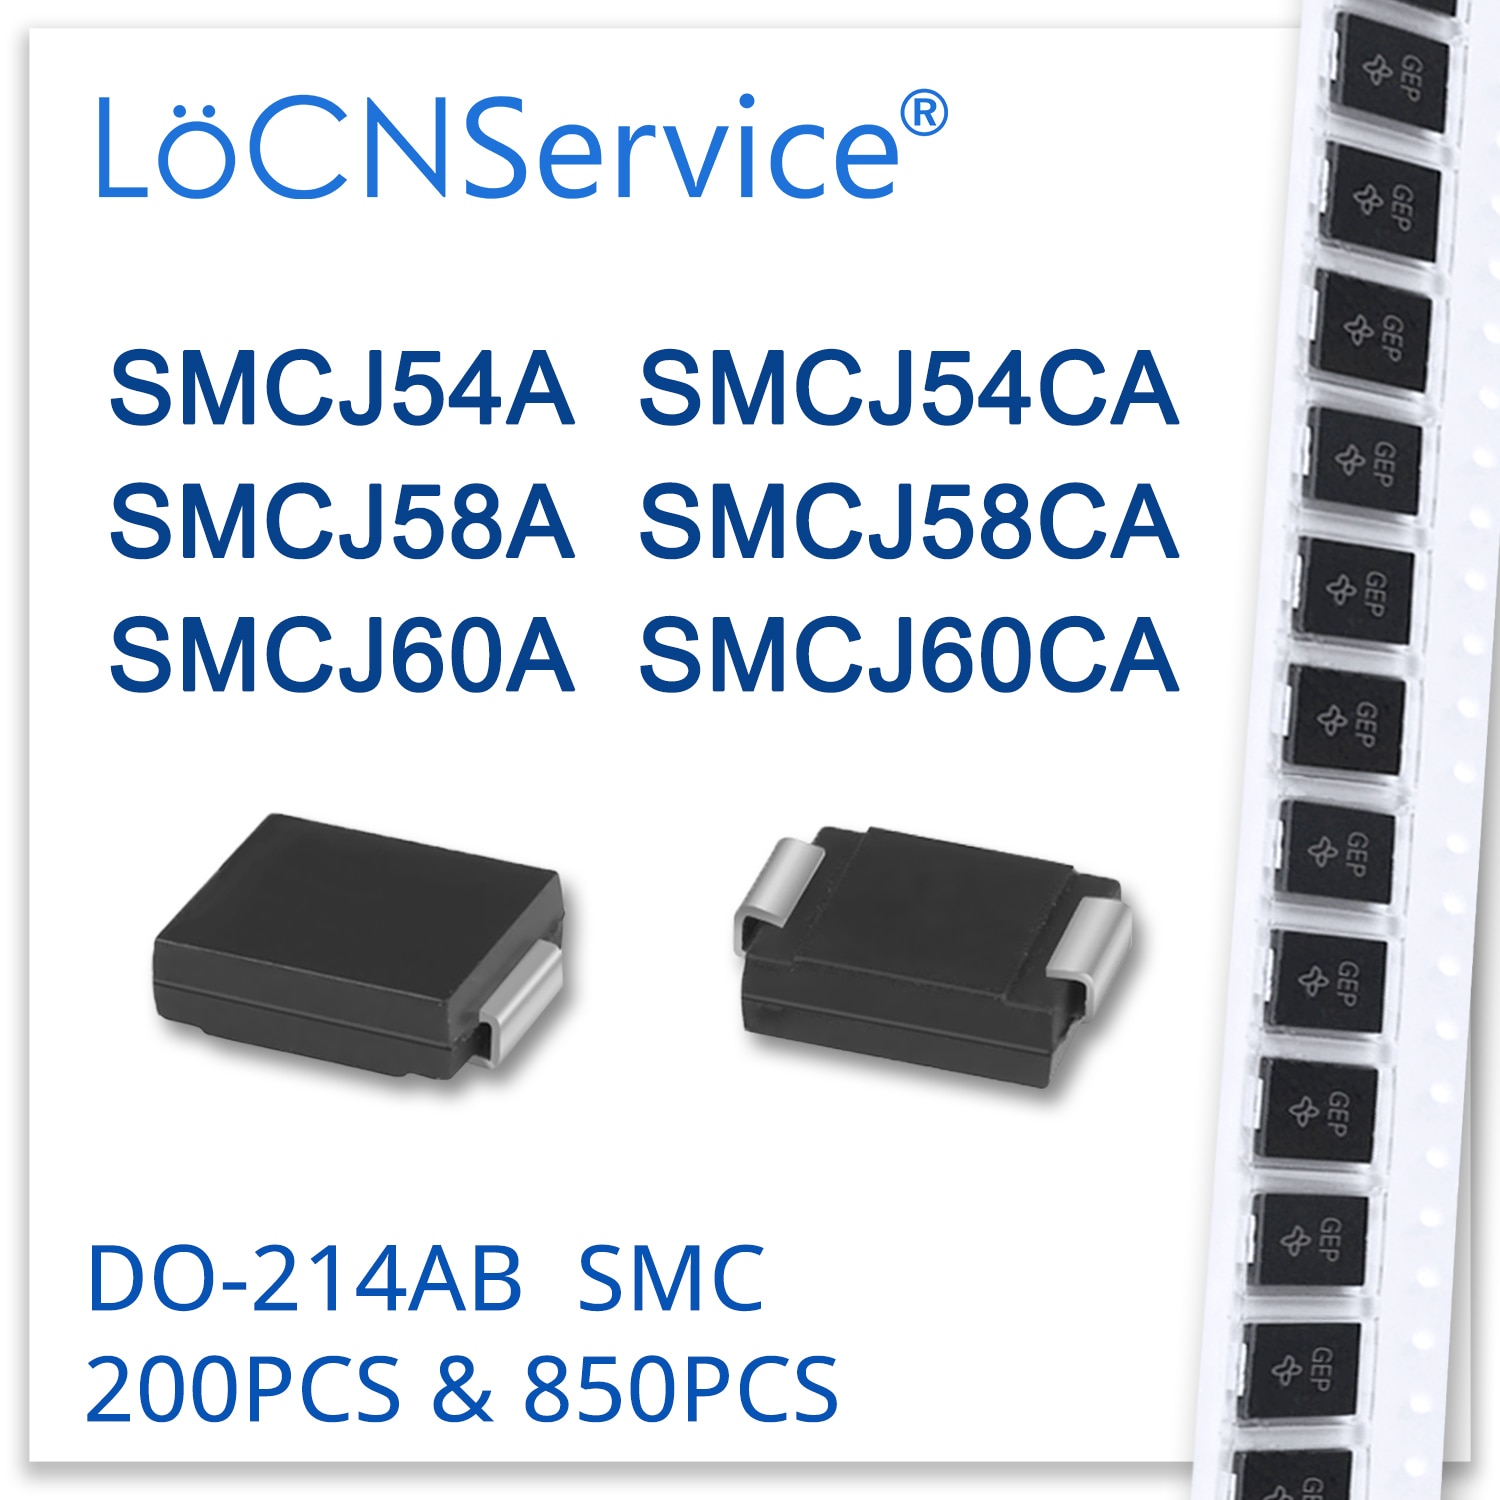 LoCNService ̿ DO214AB TVS, 200PCs, 850PCs, SMCJ54, SMCJ54A, SMCJ54CA, SMCJ58, SMCJ58A, SMCJ60, SMCJ60A, SMCJ60CA